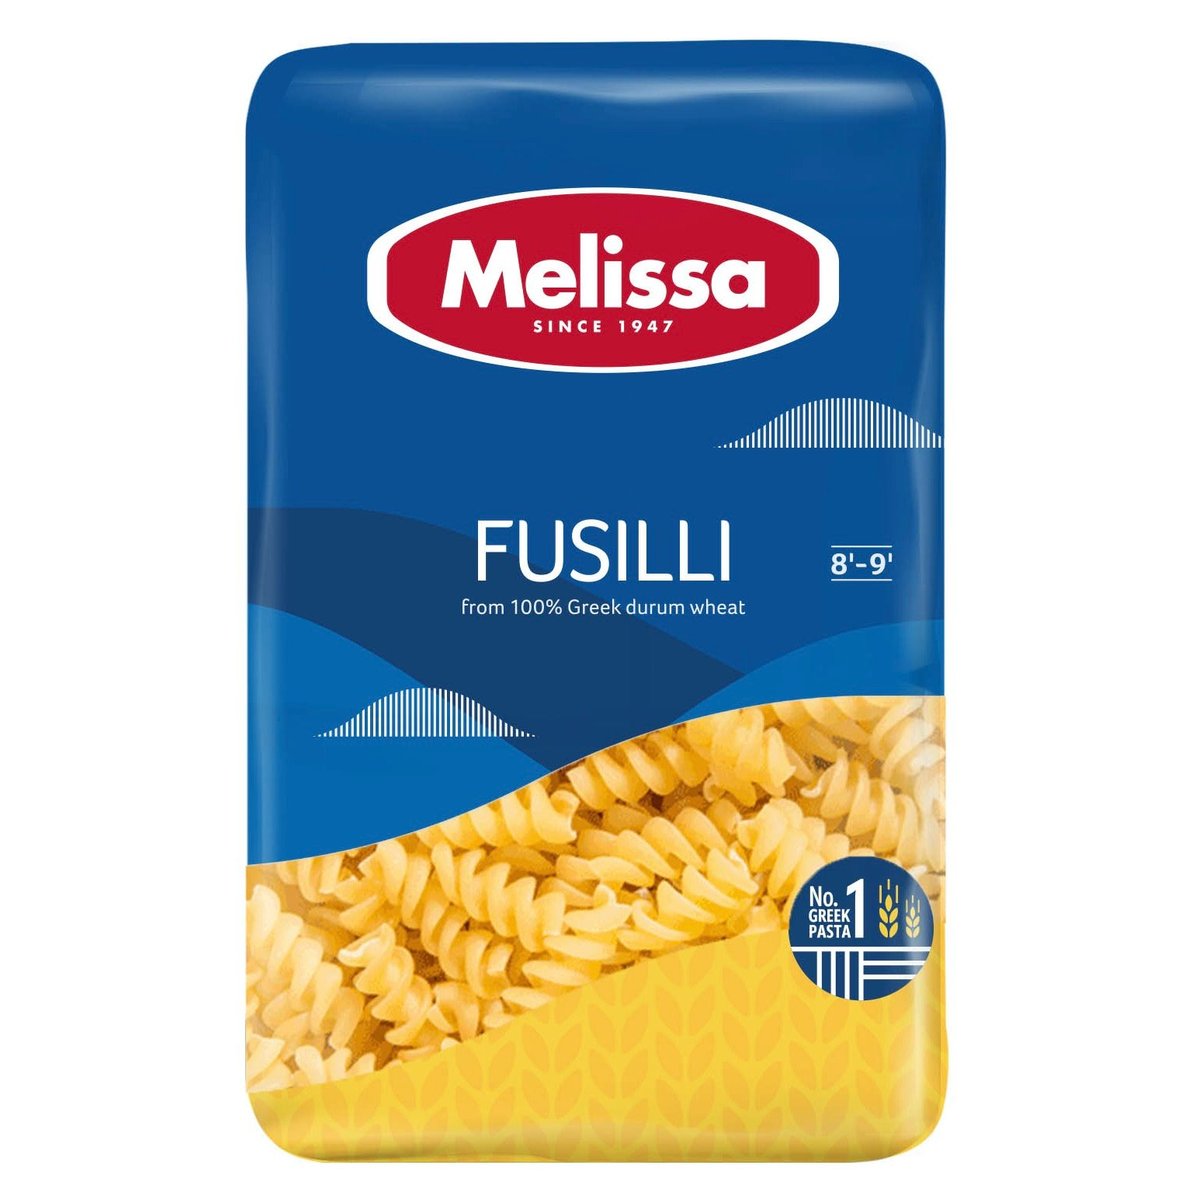 Melissa Fusilli